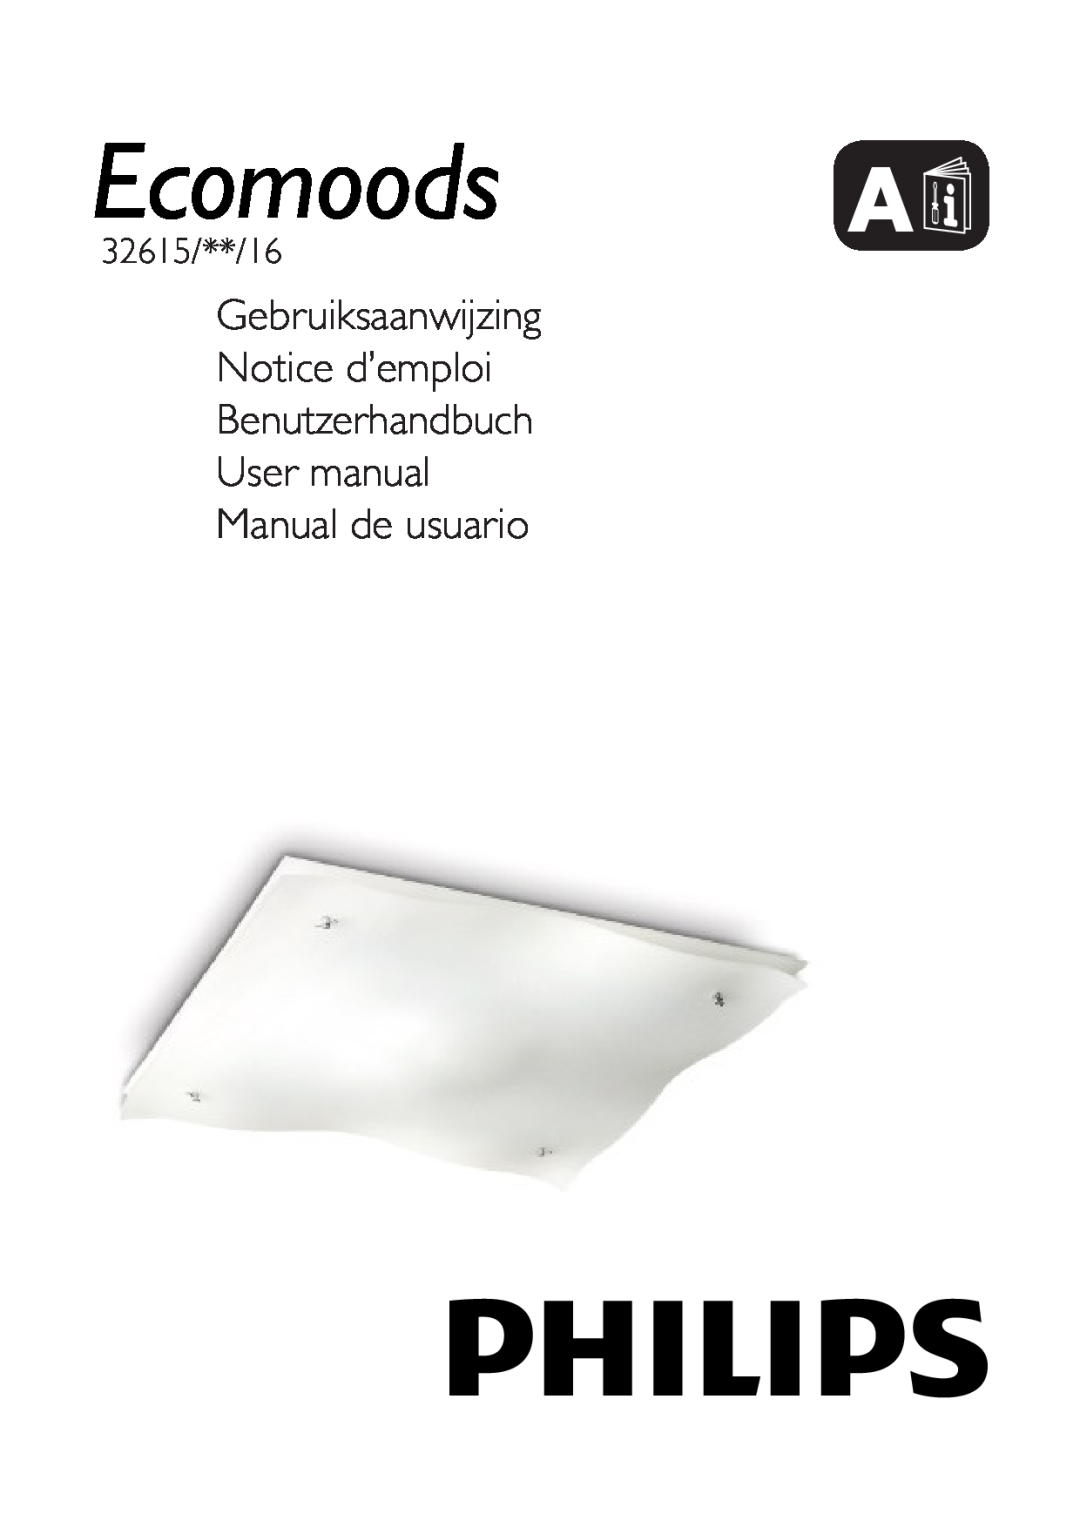 Philips 32615/31/16 user manual Gebruiksaanwijzing Notice d’emploi, Benutzerhandbuch User manual Manual de usuario 